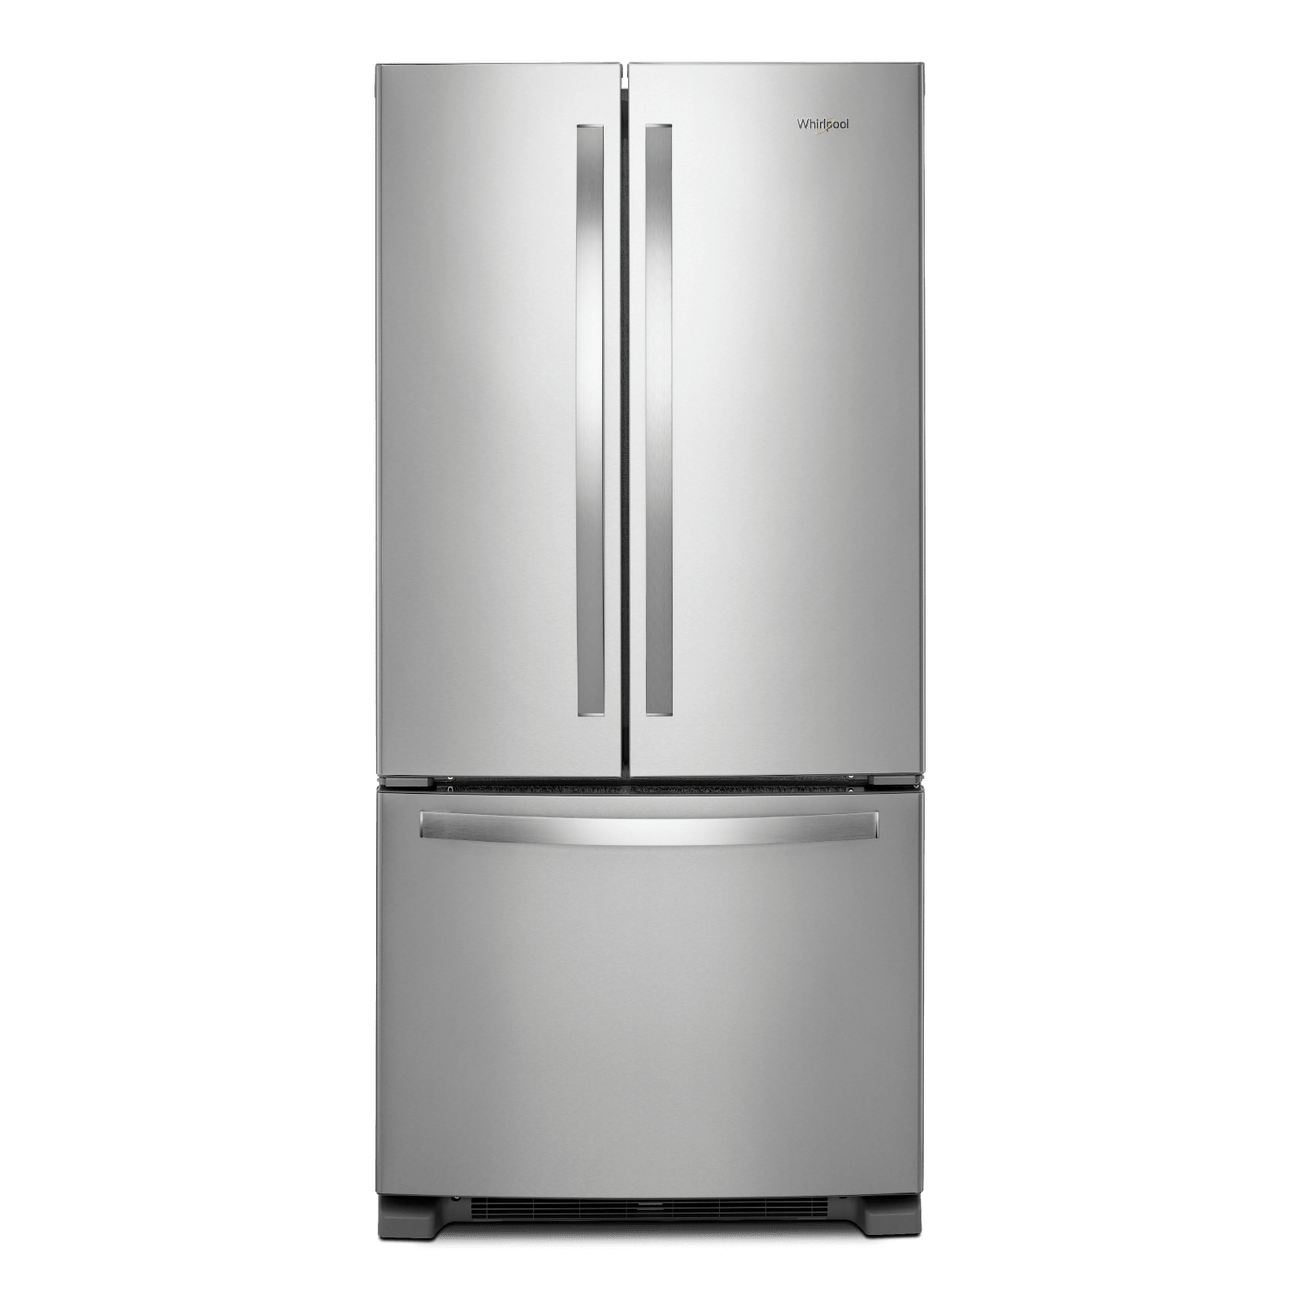 Whirlpool French Door Refrigerators